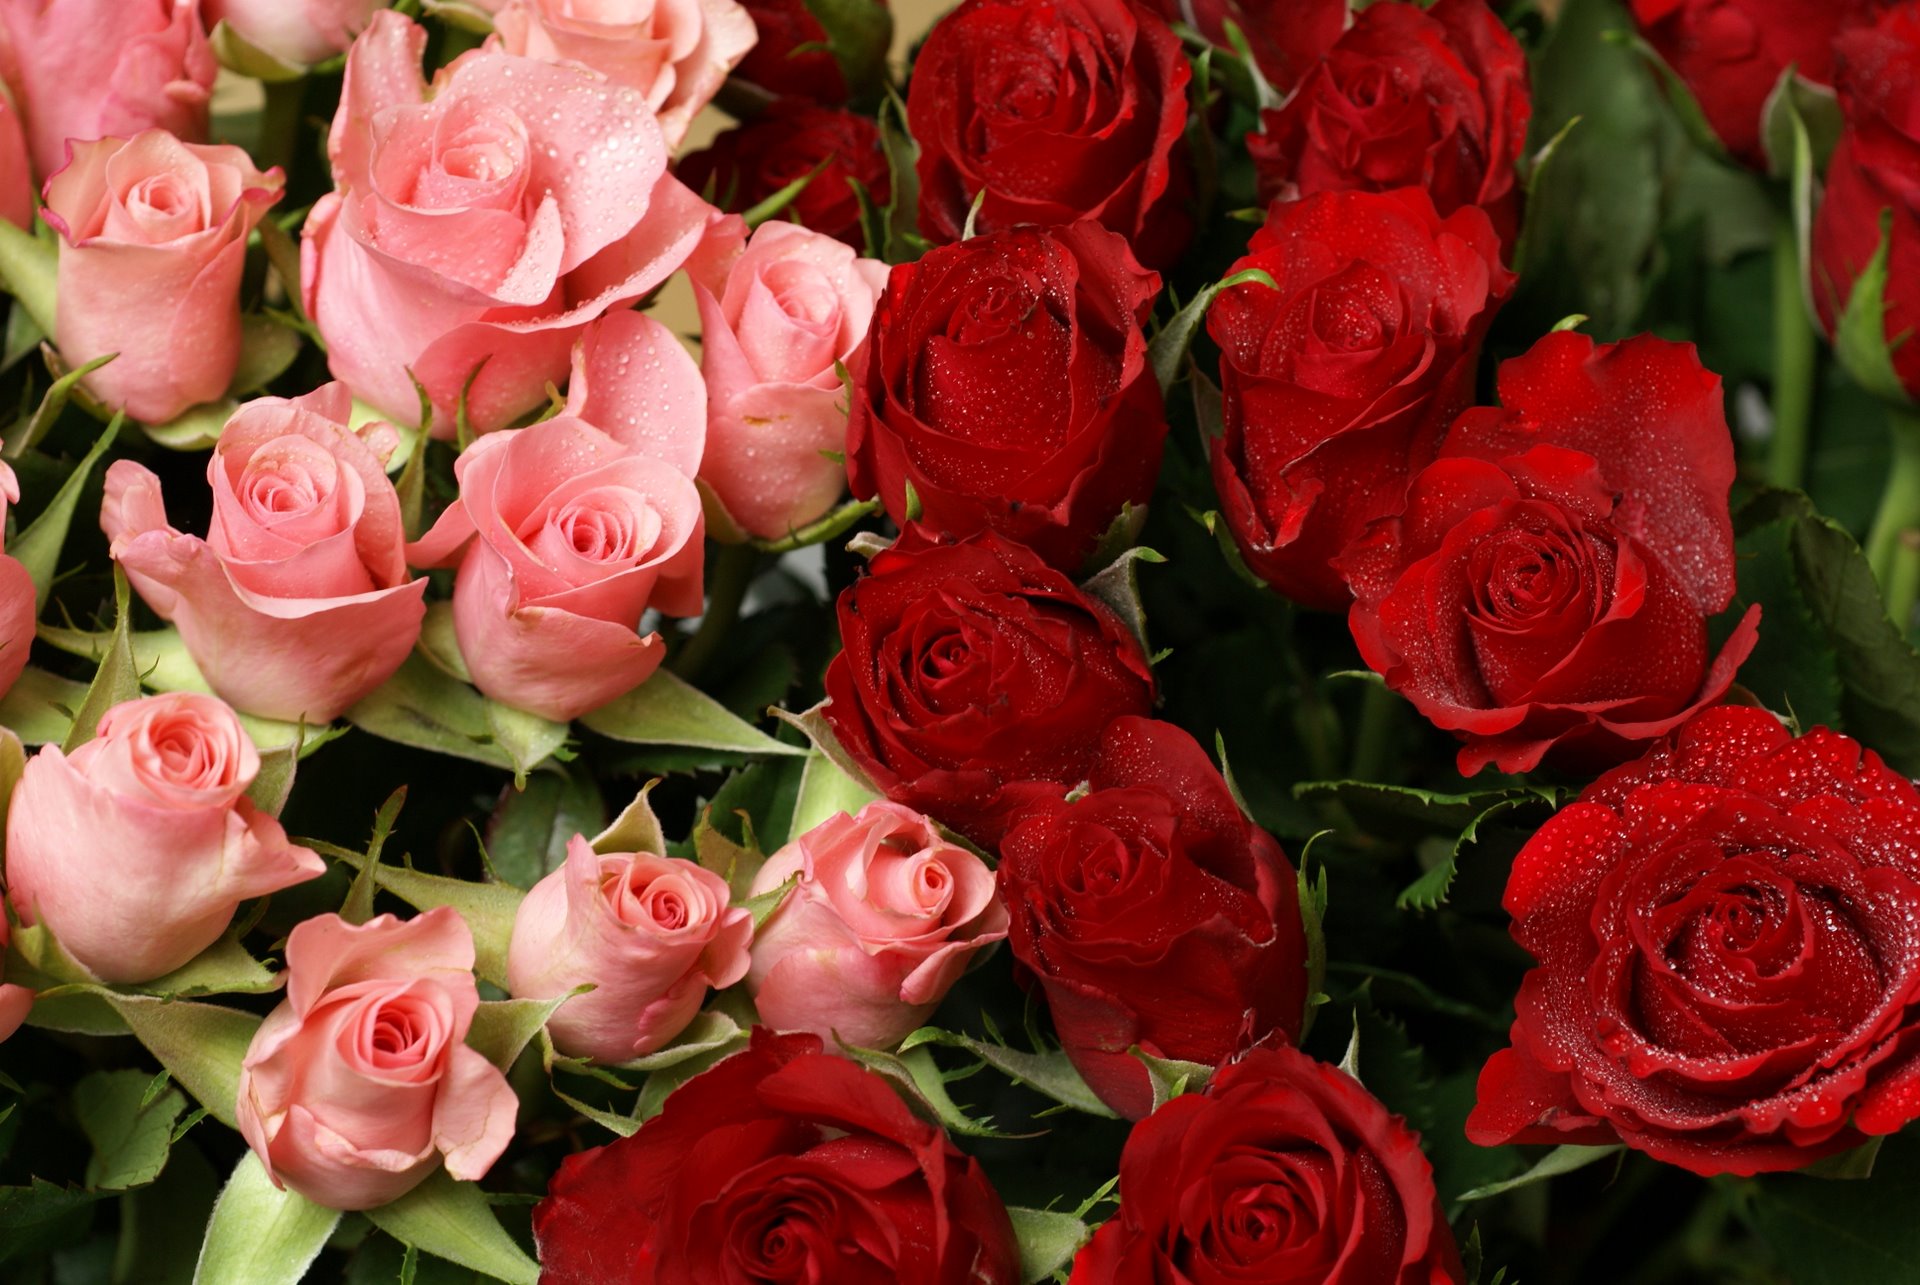 أجمل مكتبة ورد  أحمر من اختيـــــــــــــارى Pink-and-red-roses-bouquet01606